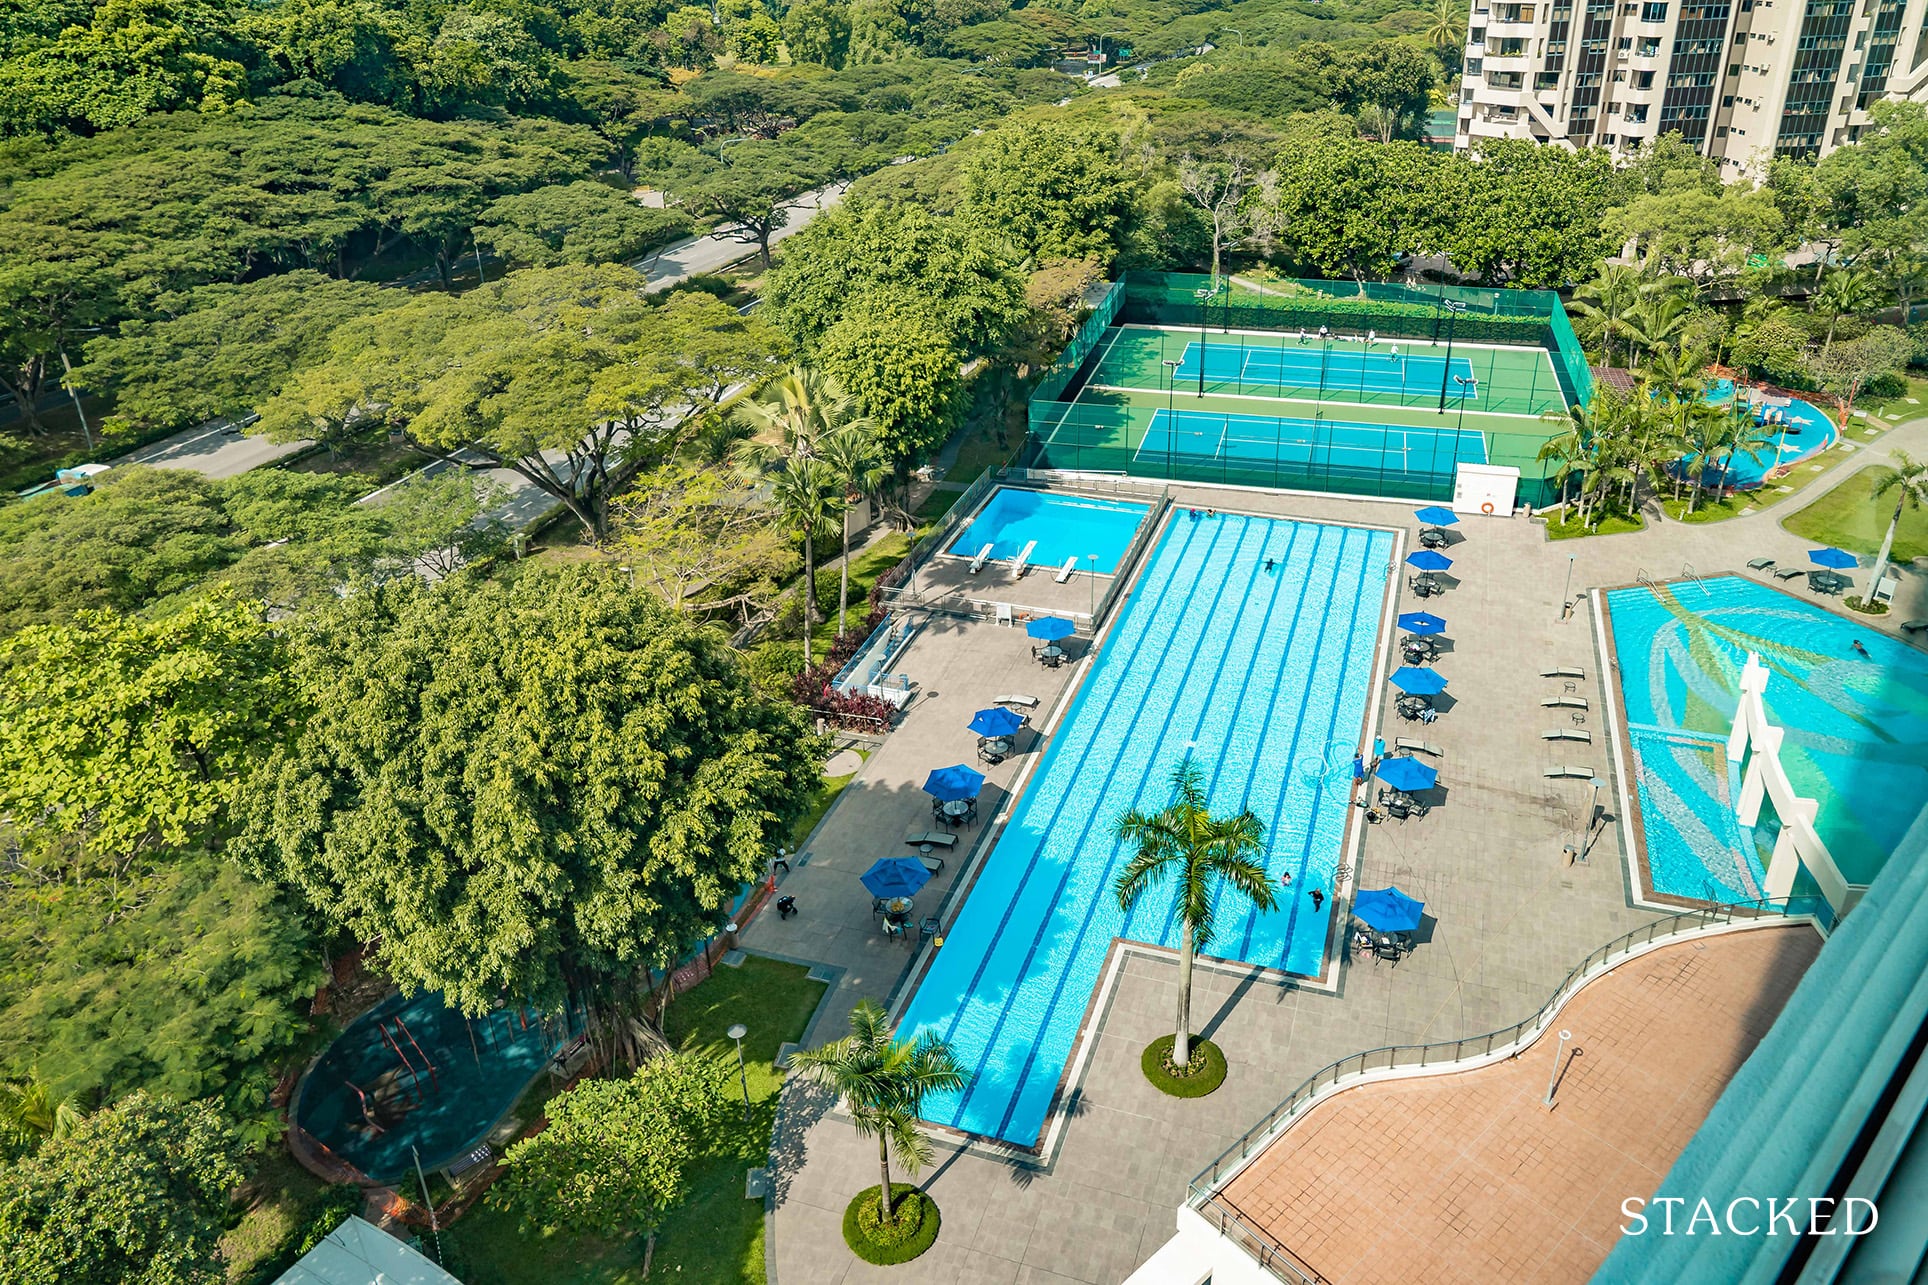 Costa Del Sol swimming pool